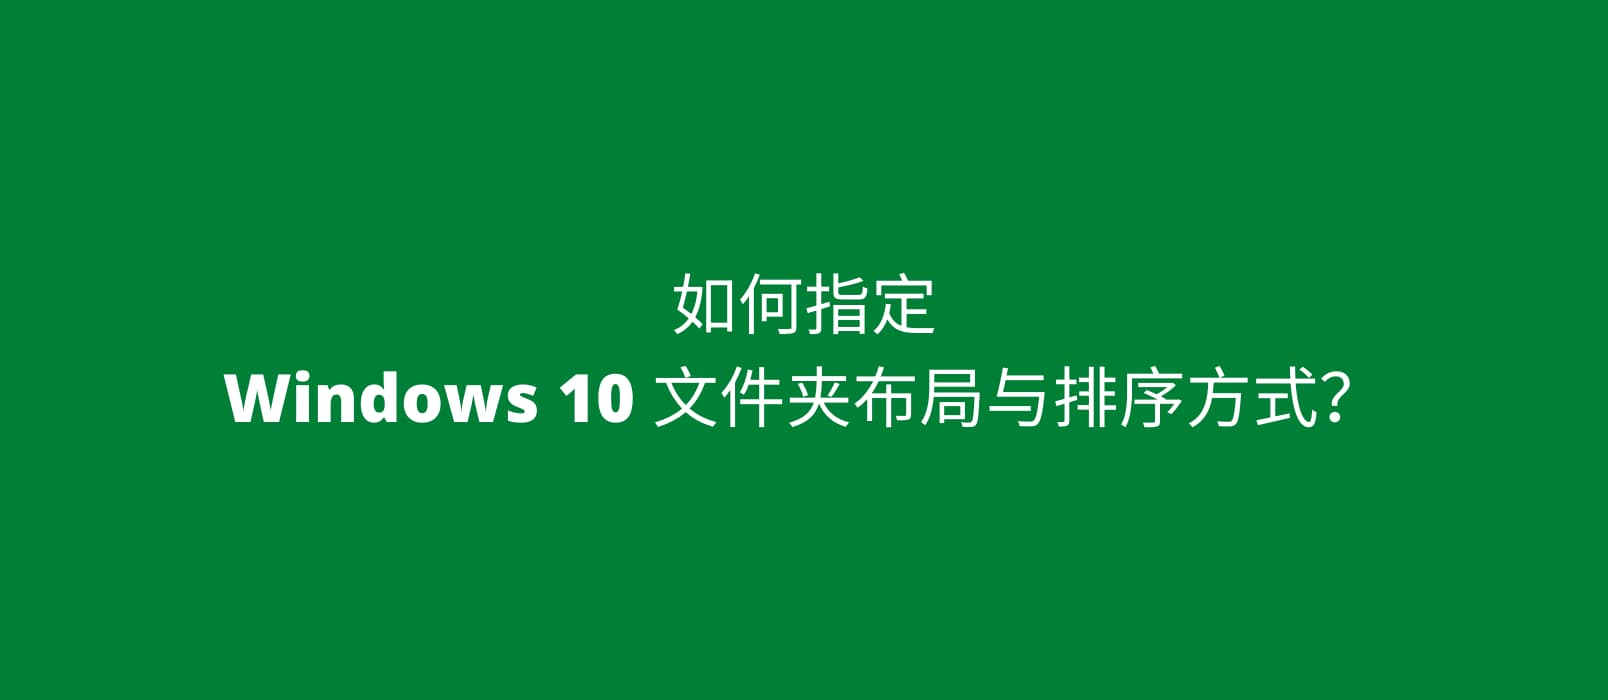 如何指定 Windows 10 文件夹布局与排序方式？ 1